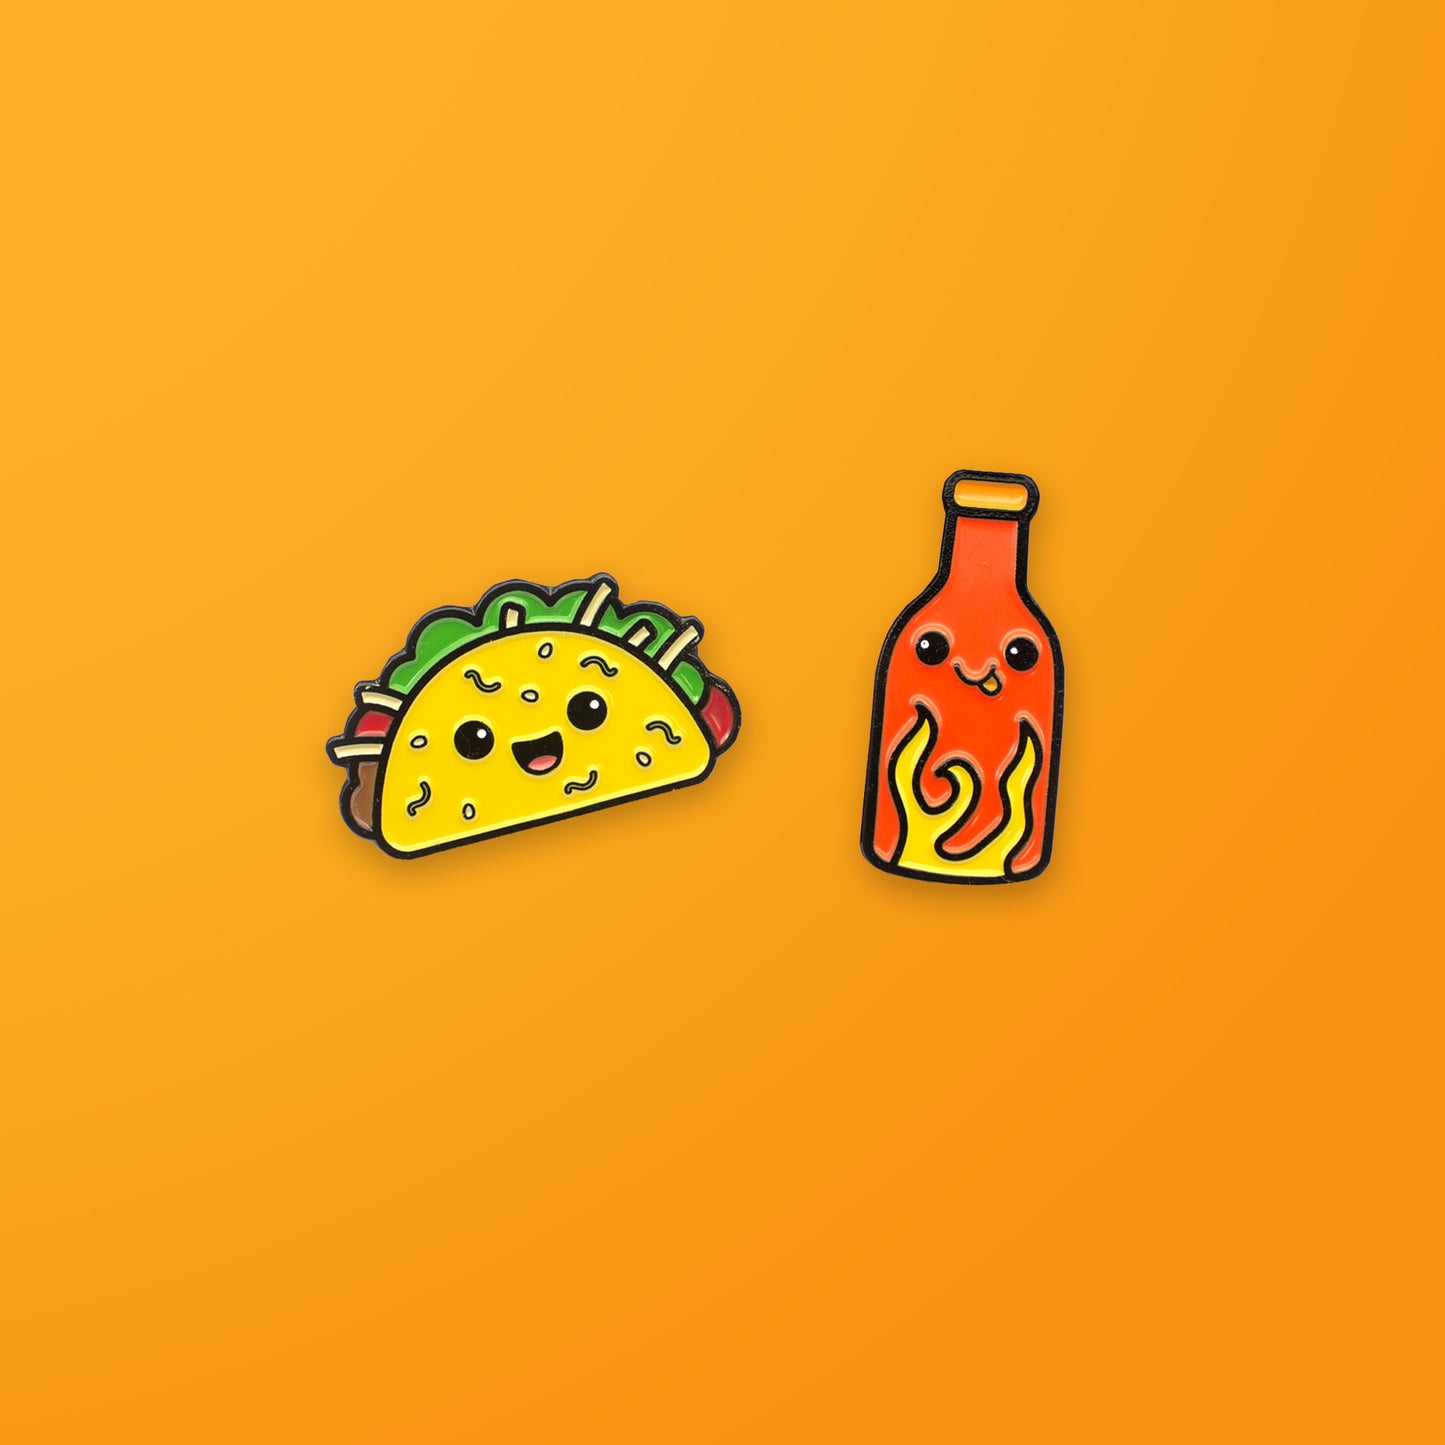 Taco and Hot Sauce enamel pin set on orange background